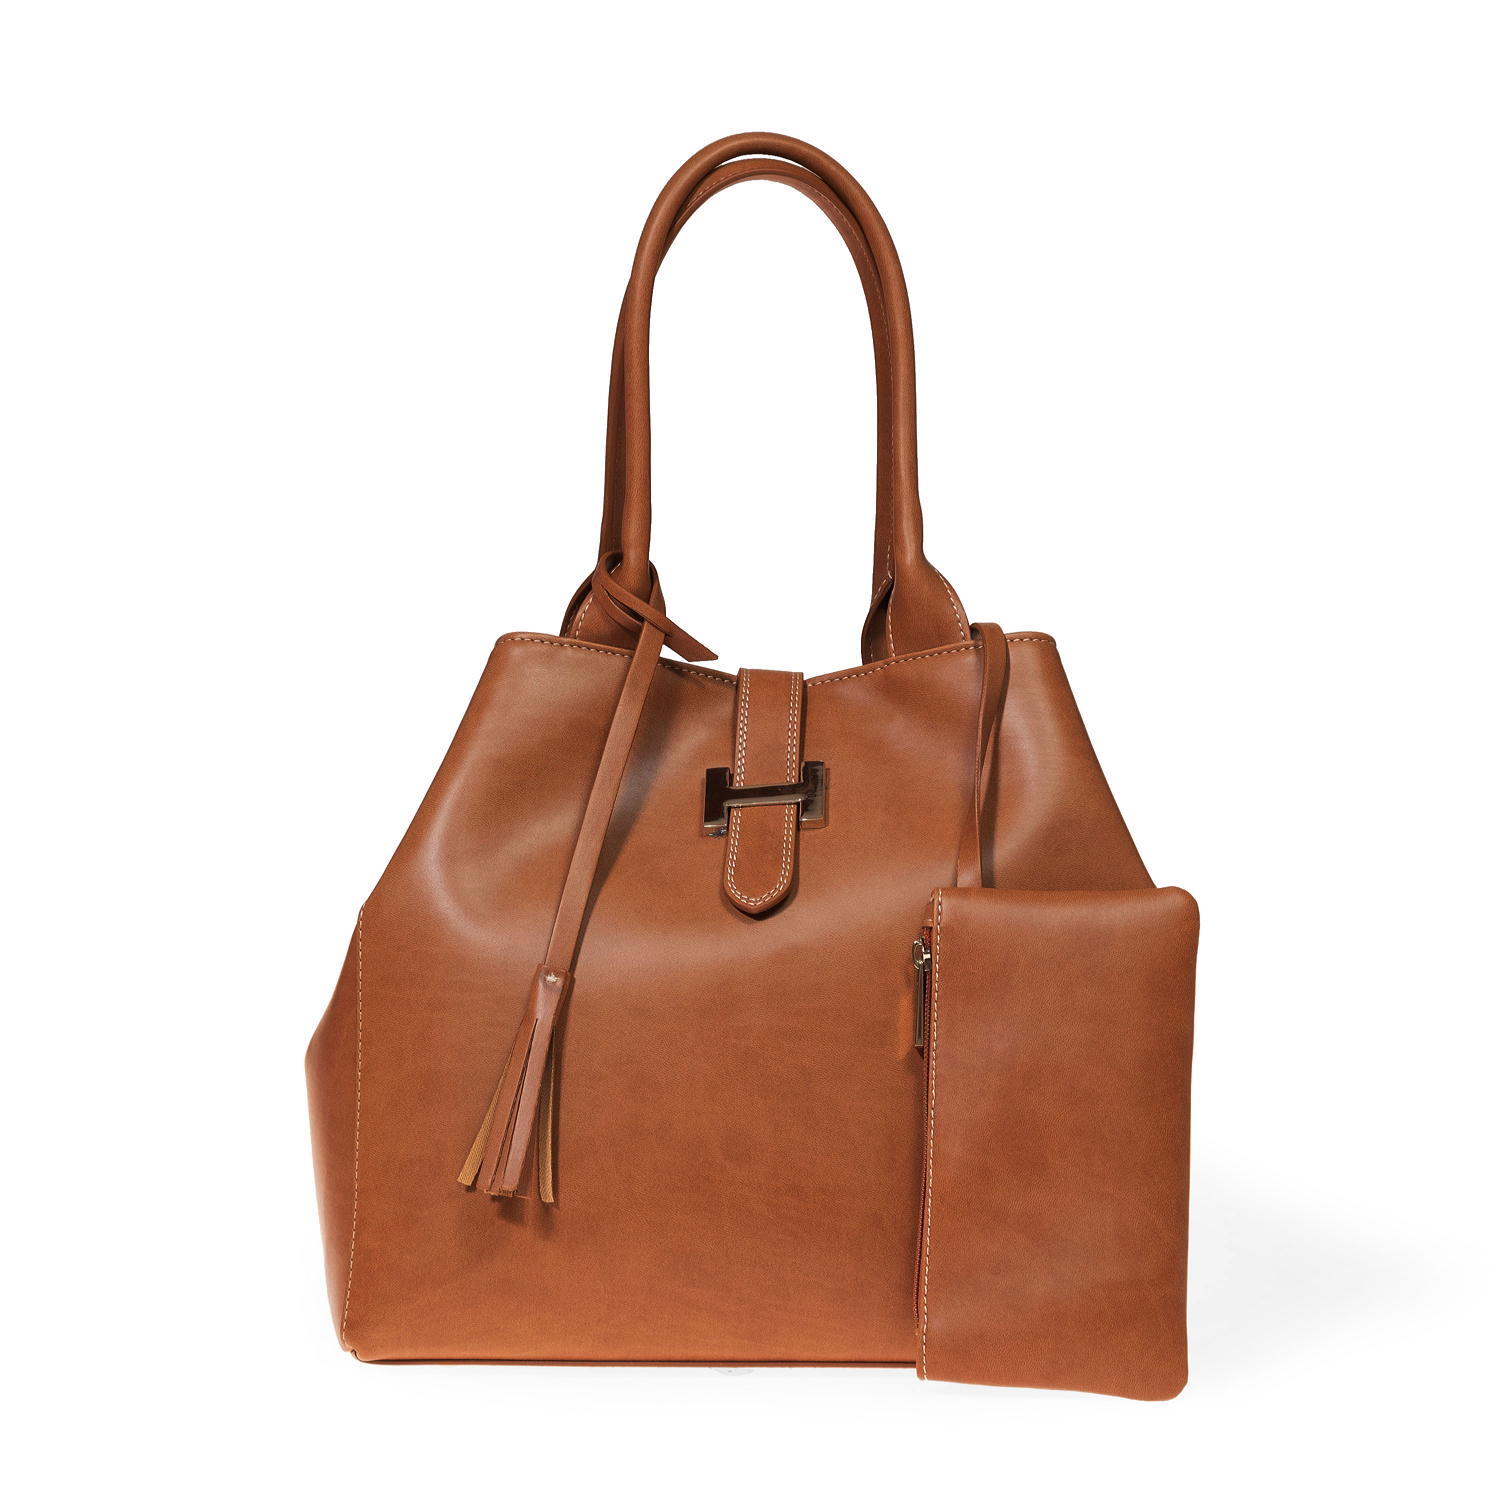 Designer Bags Wholesale Bags Indian Printed Handbags Hand Block Print bags  manufacturer – Kusum Handicrafts